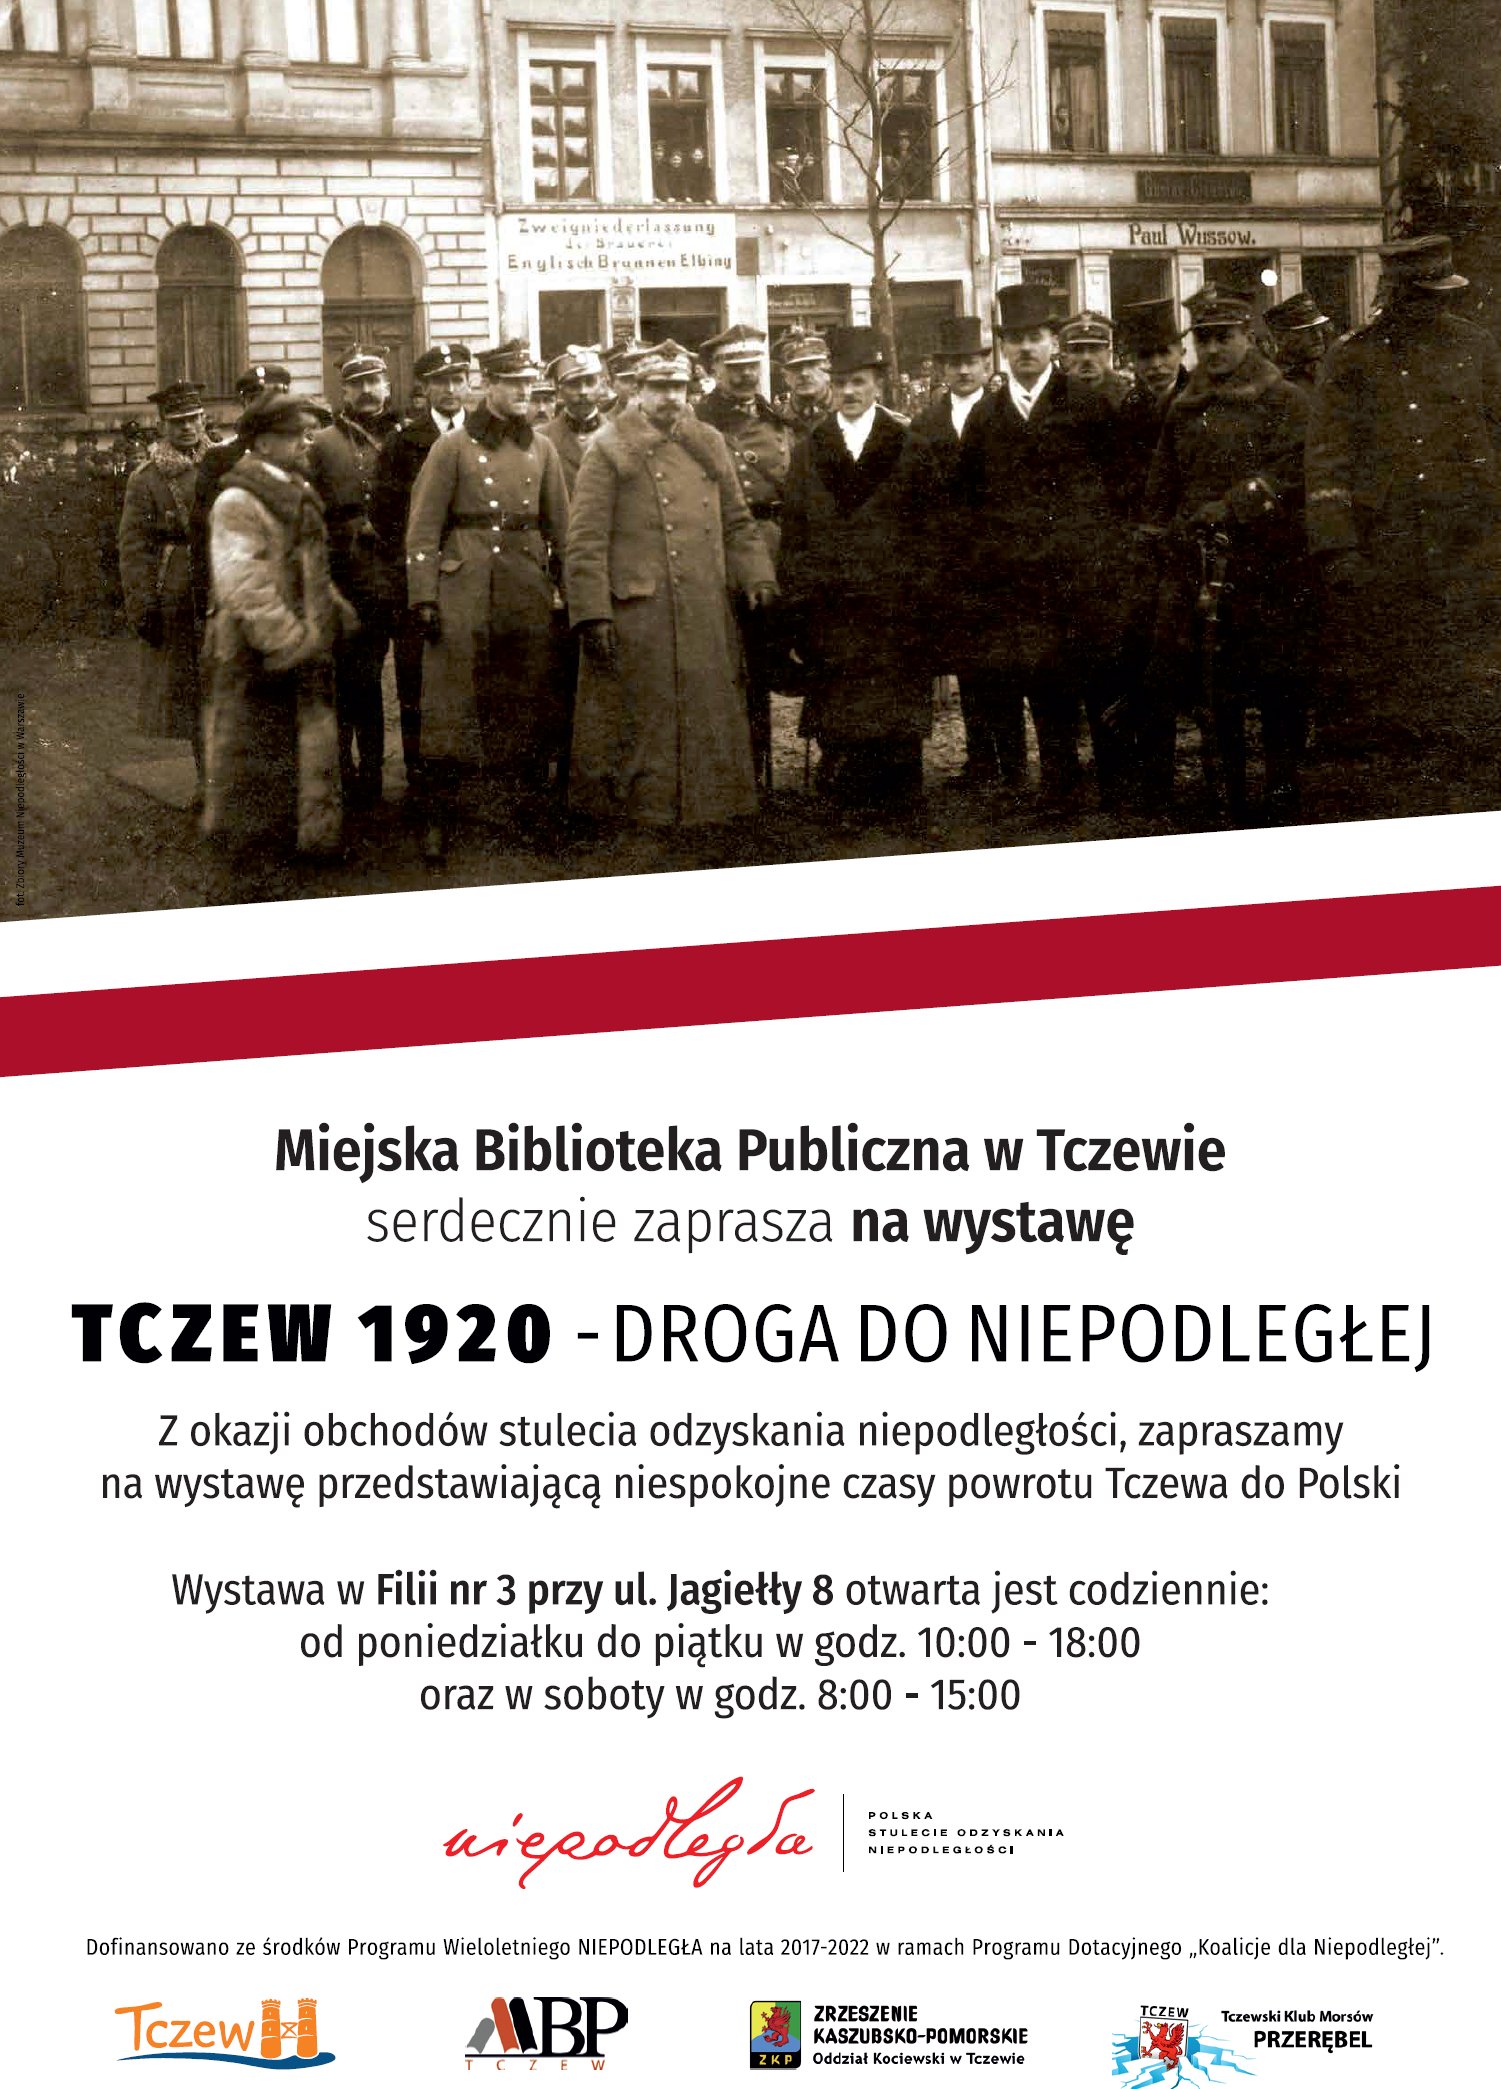 plakat wydarzenia z historycznym zdjęciem i informacjami